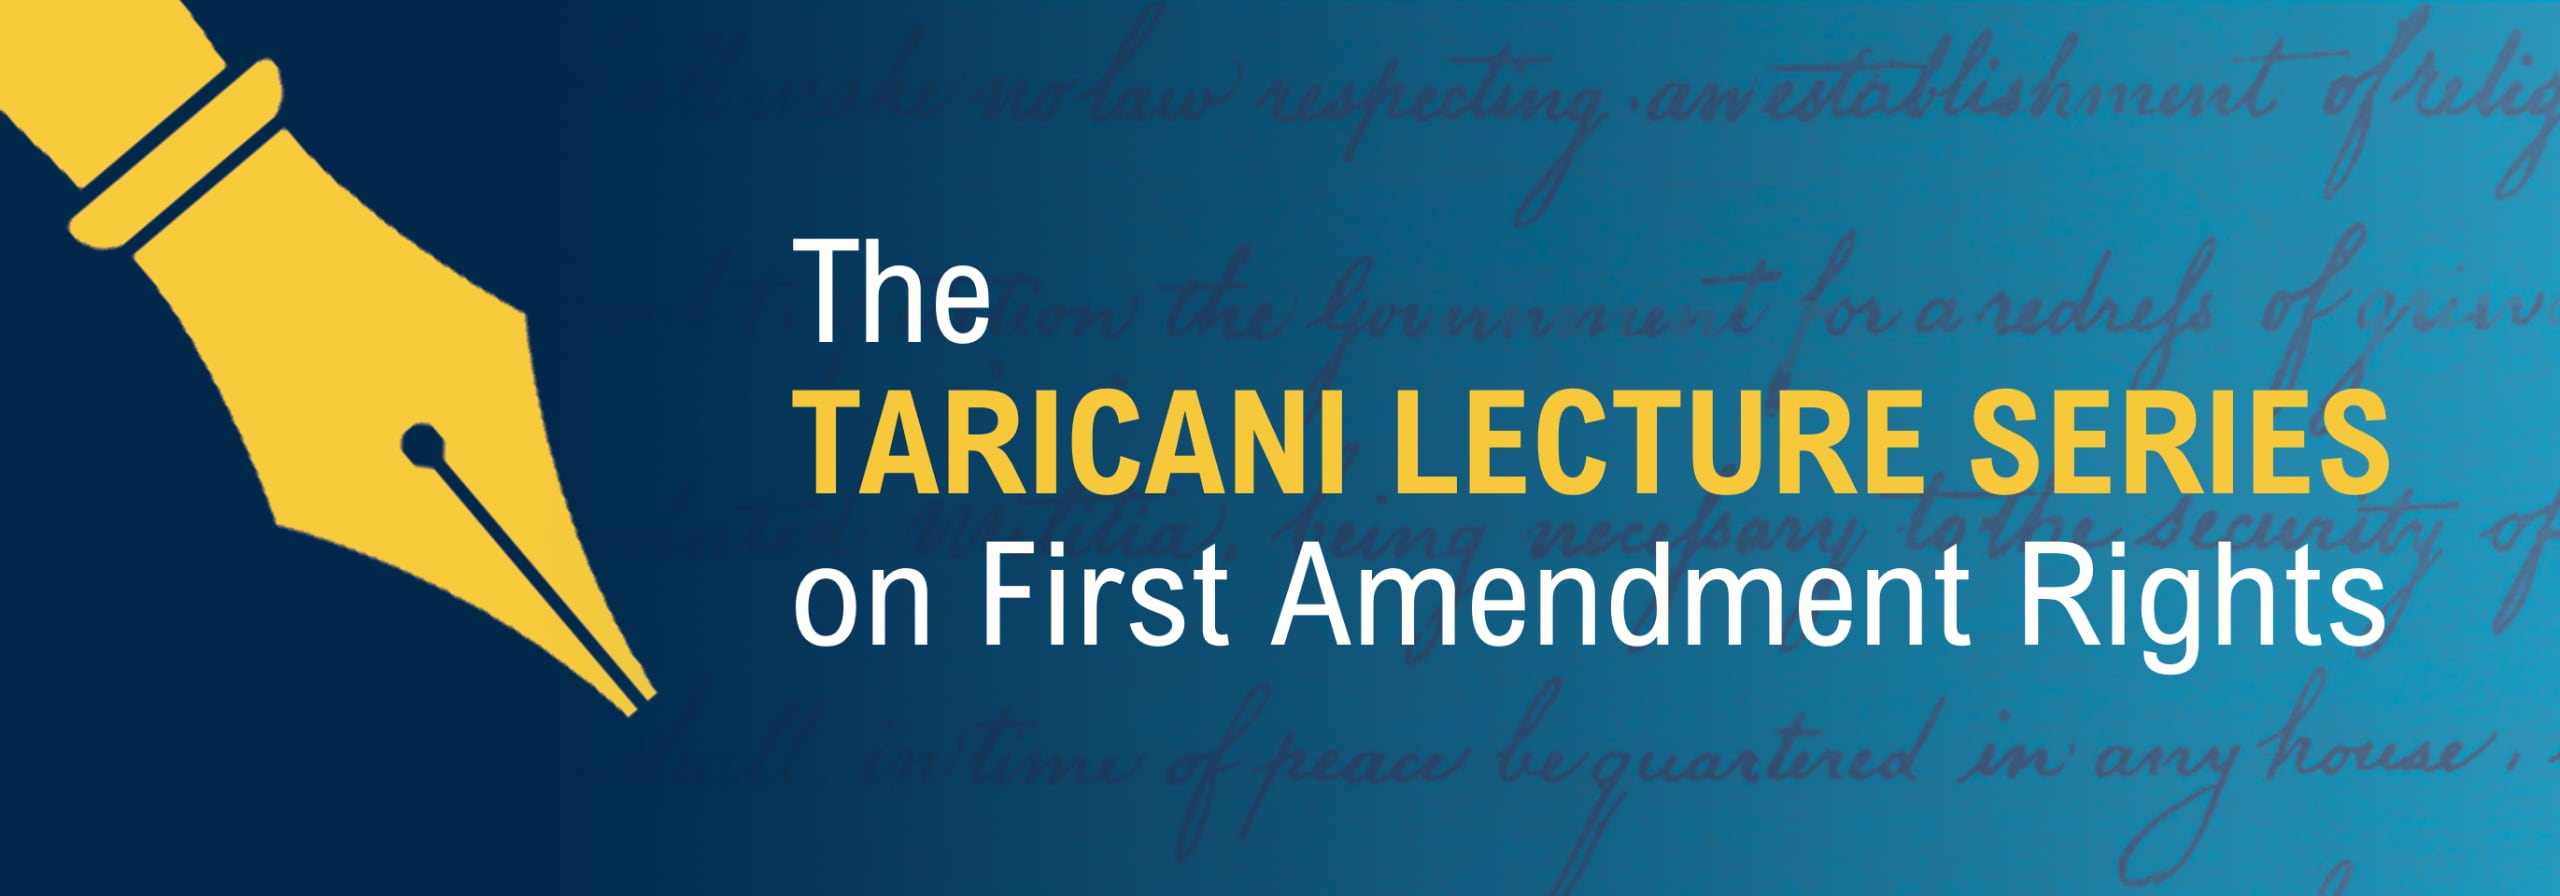 关于第一修正案权利的Taricani系列讲座